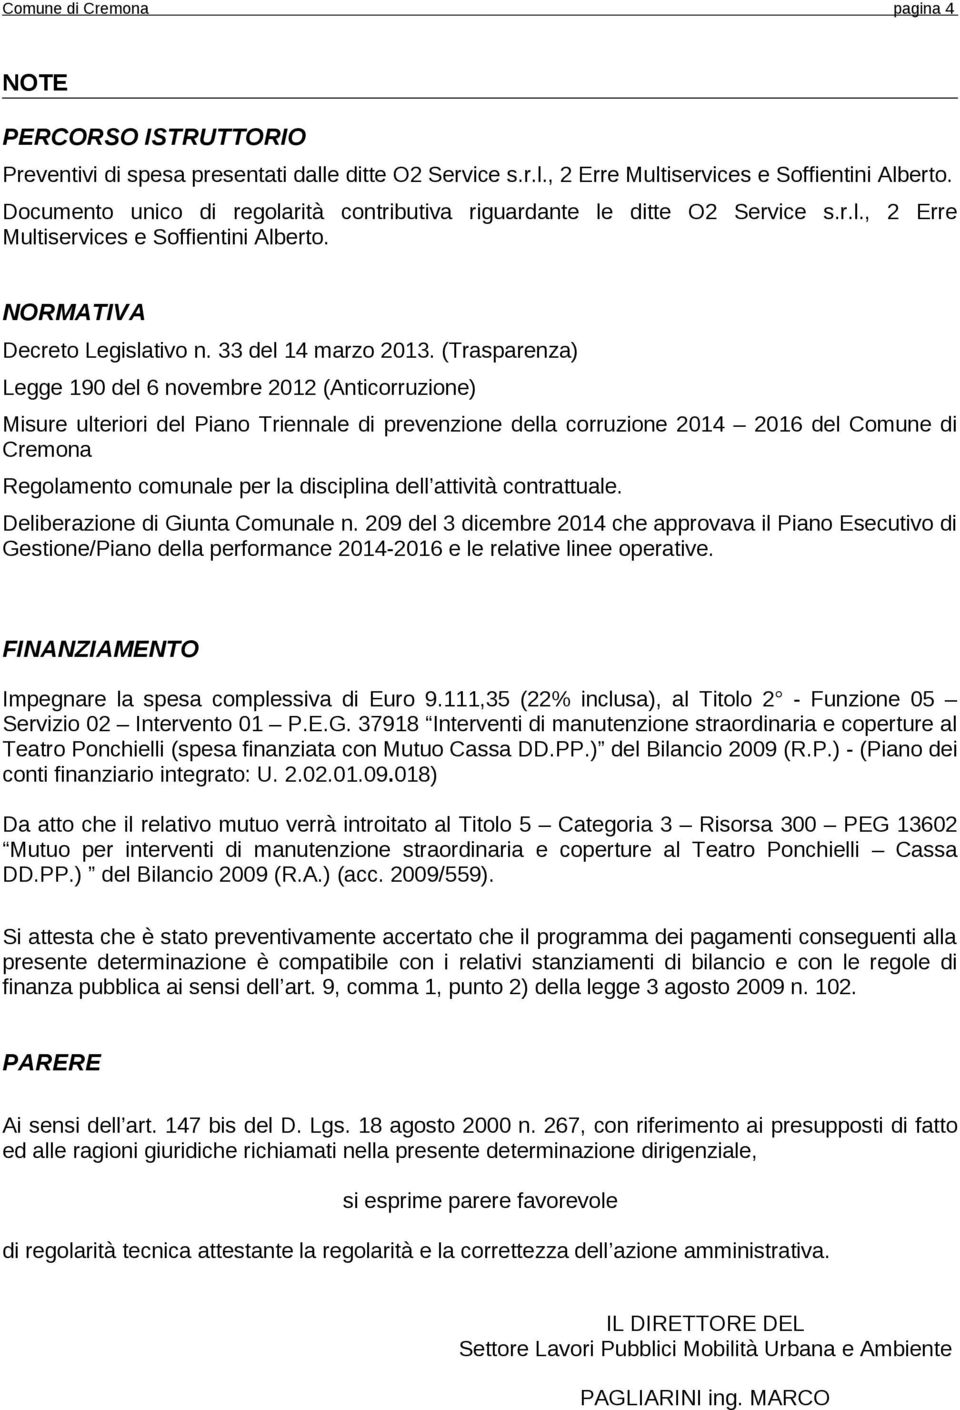 (Trasparenza) Legge 190 del 6 novembre 2012 (Anticorruzione) Misure ulteriori del Piano Triennale di prevenzione della corruzione 2014 2016 del Comune di Cremona Regolamento comunale per la